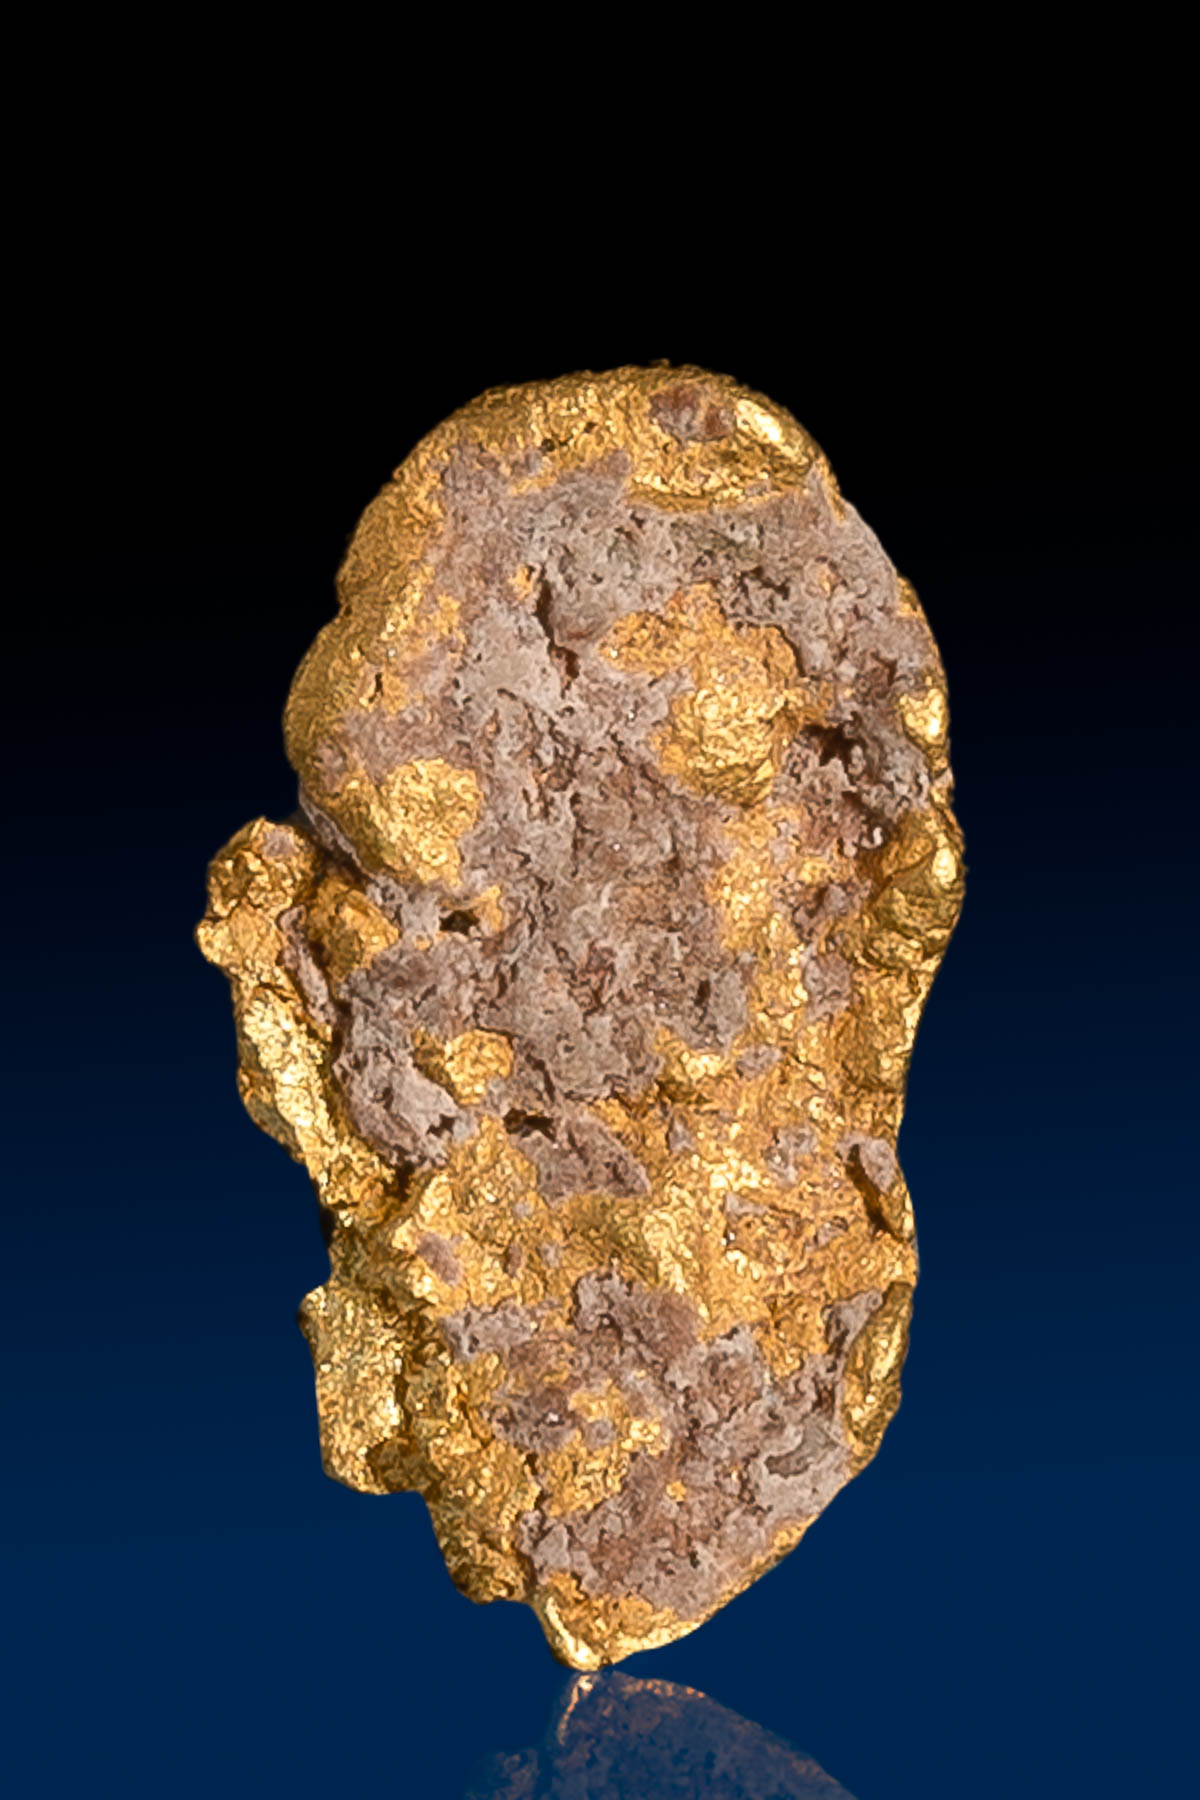 Oblong Flat Arizona Natural Gold Nugget - 1.22 grams